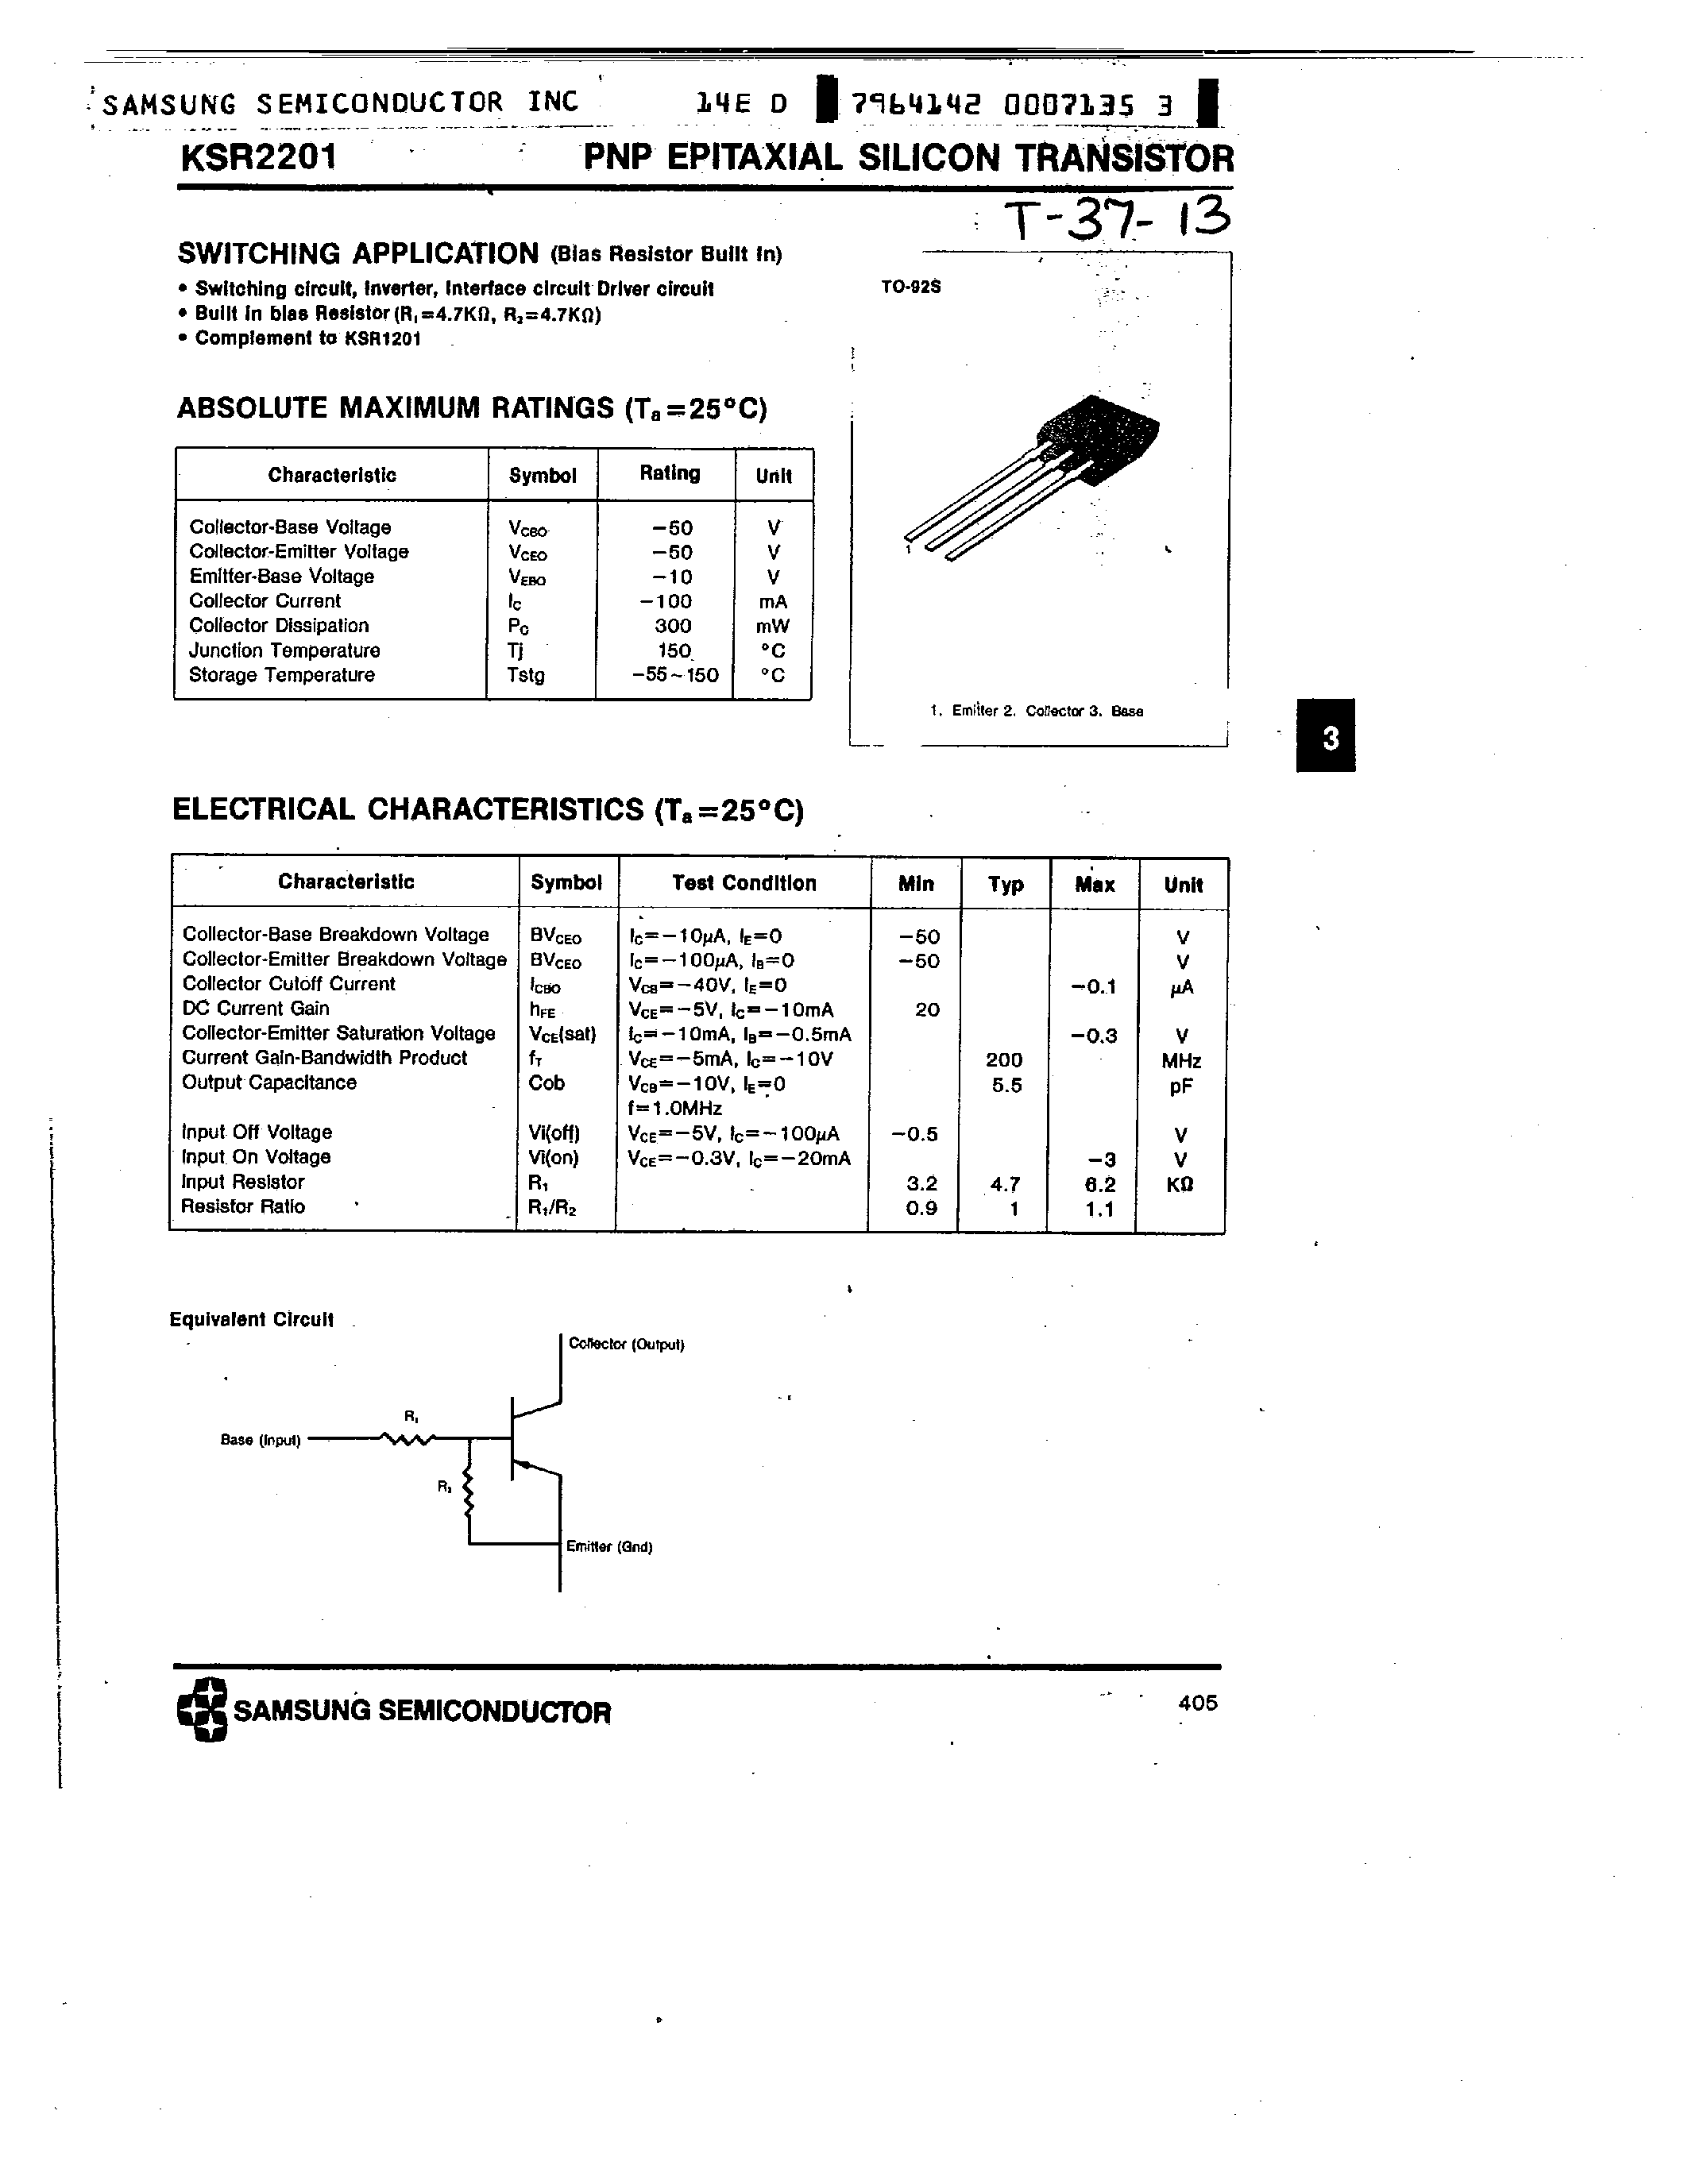 Datasheet KSR2201 - PNP (SWITCHING APPLICATION) page 1